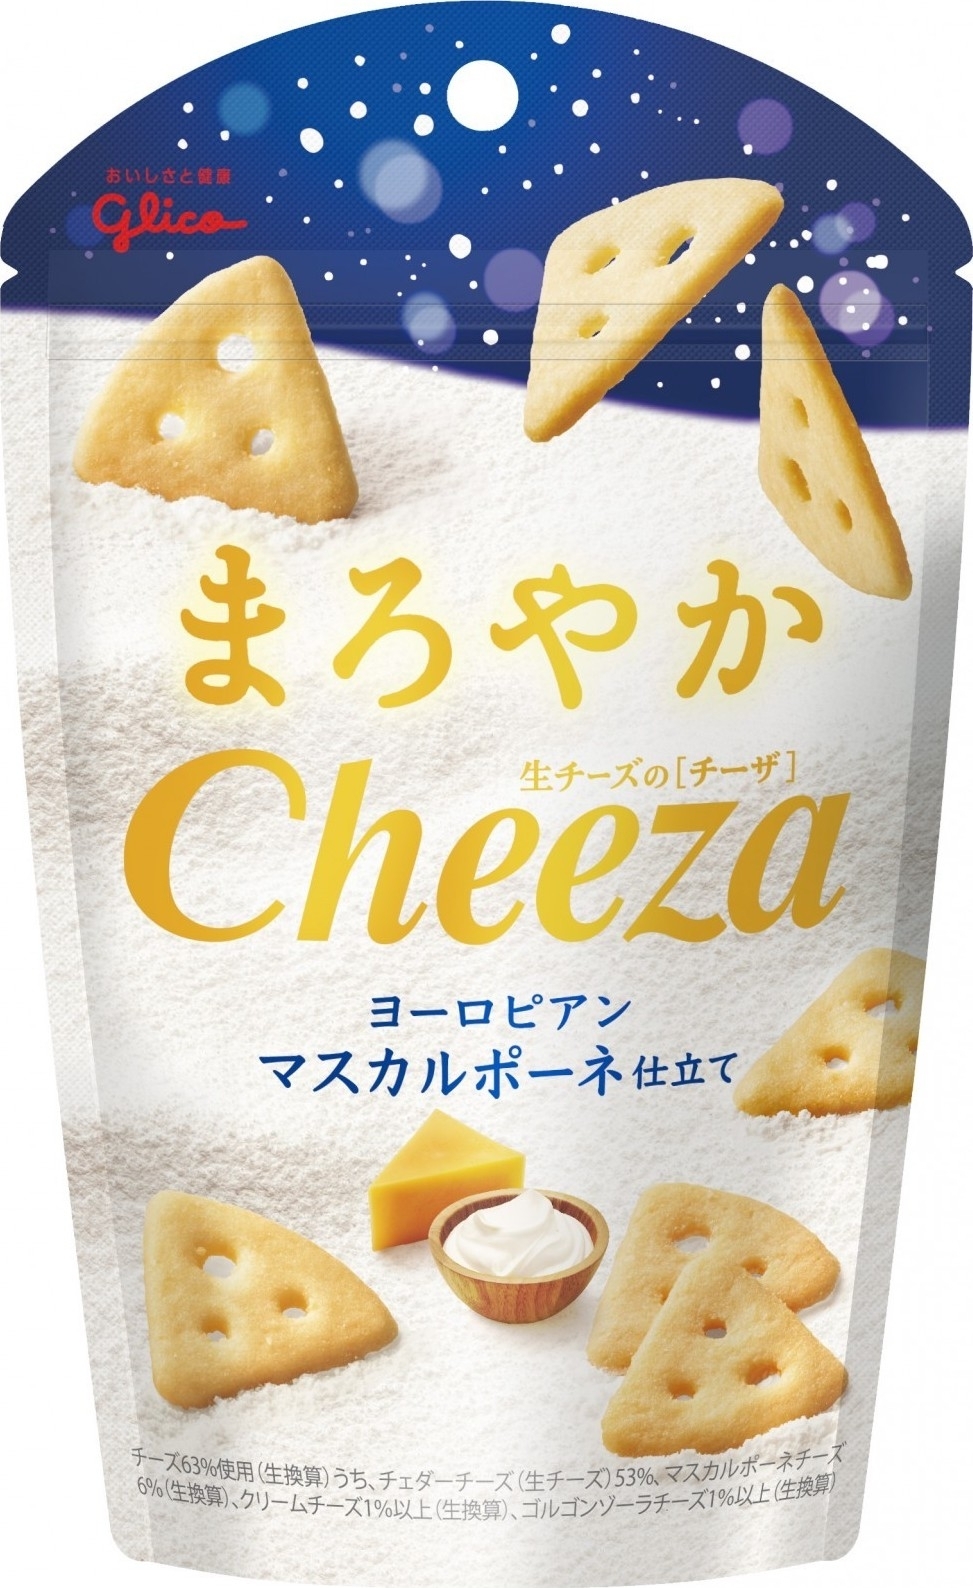 【高評価】グリコ 生チーズのチーザ マスカルポーネ仕立ての感想・クチコミ・商品情報【もぐナビ】